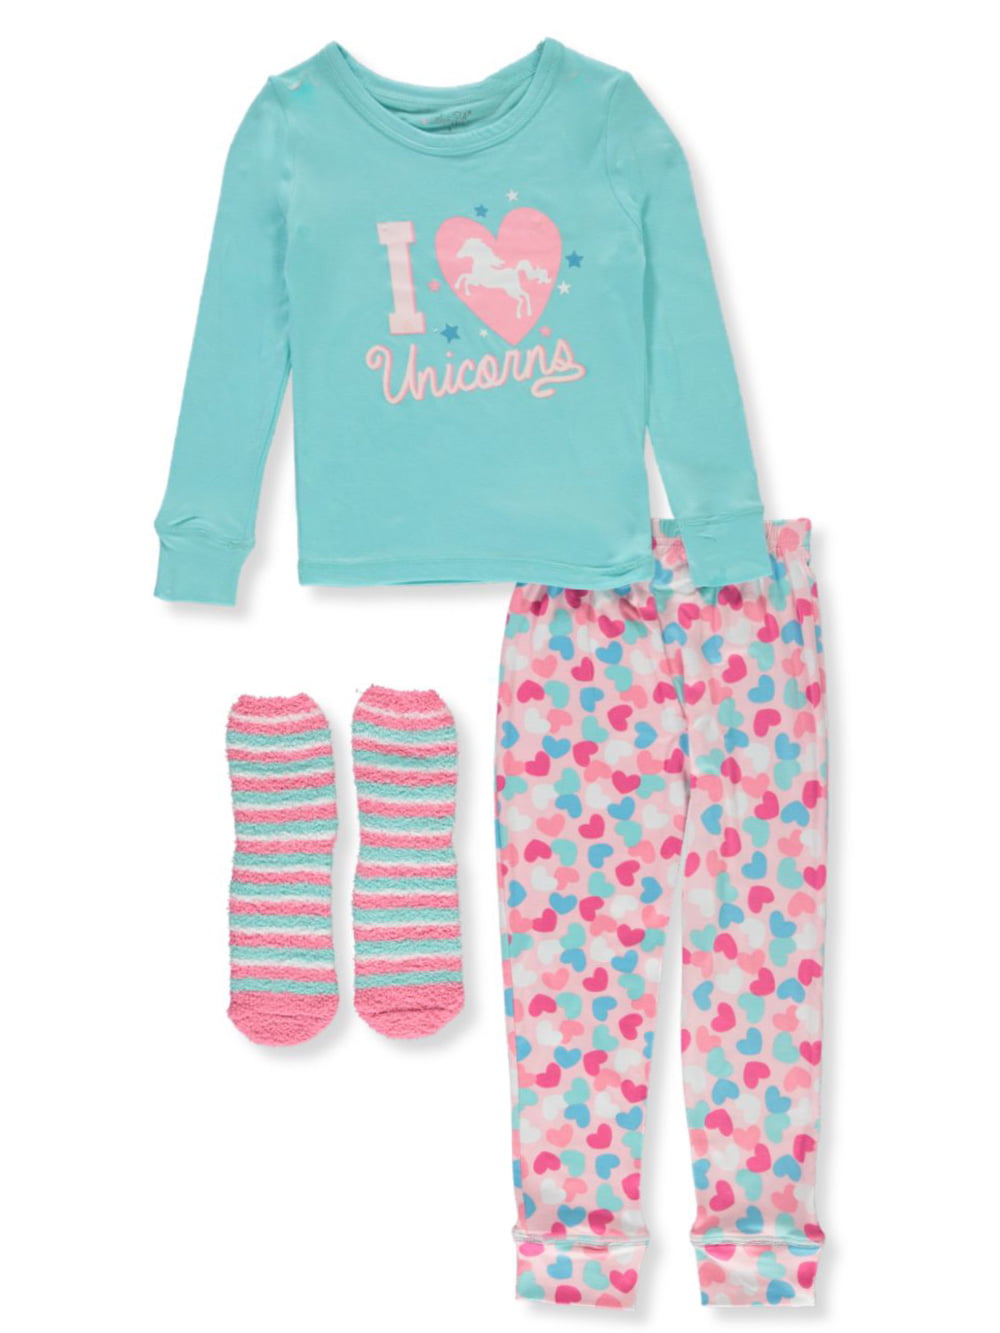 2 Piece Fleece Matching Sleepwear Set Toddler Rene Rofe Baby Girls' Pajama Set